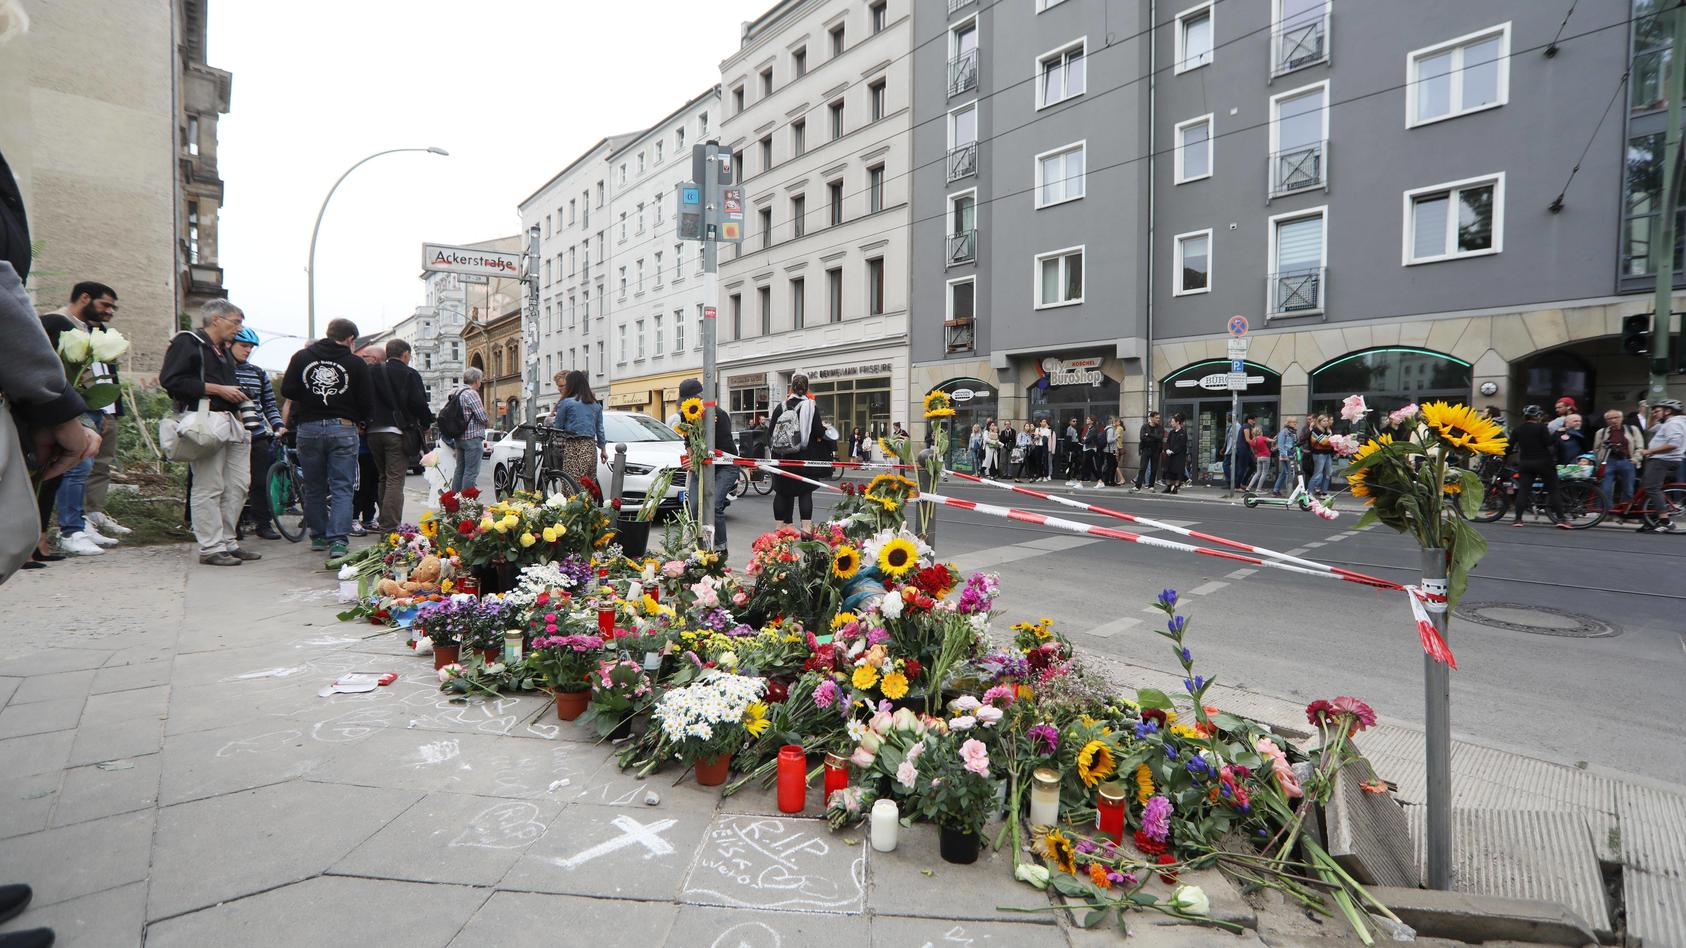 Blumen nach dem Unfall in der Invalidenstraße in Berlin. Hier waren am Freitag vier Menschen gestorben.